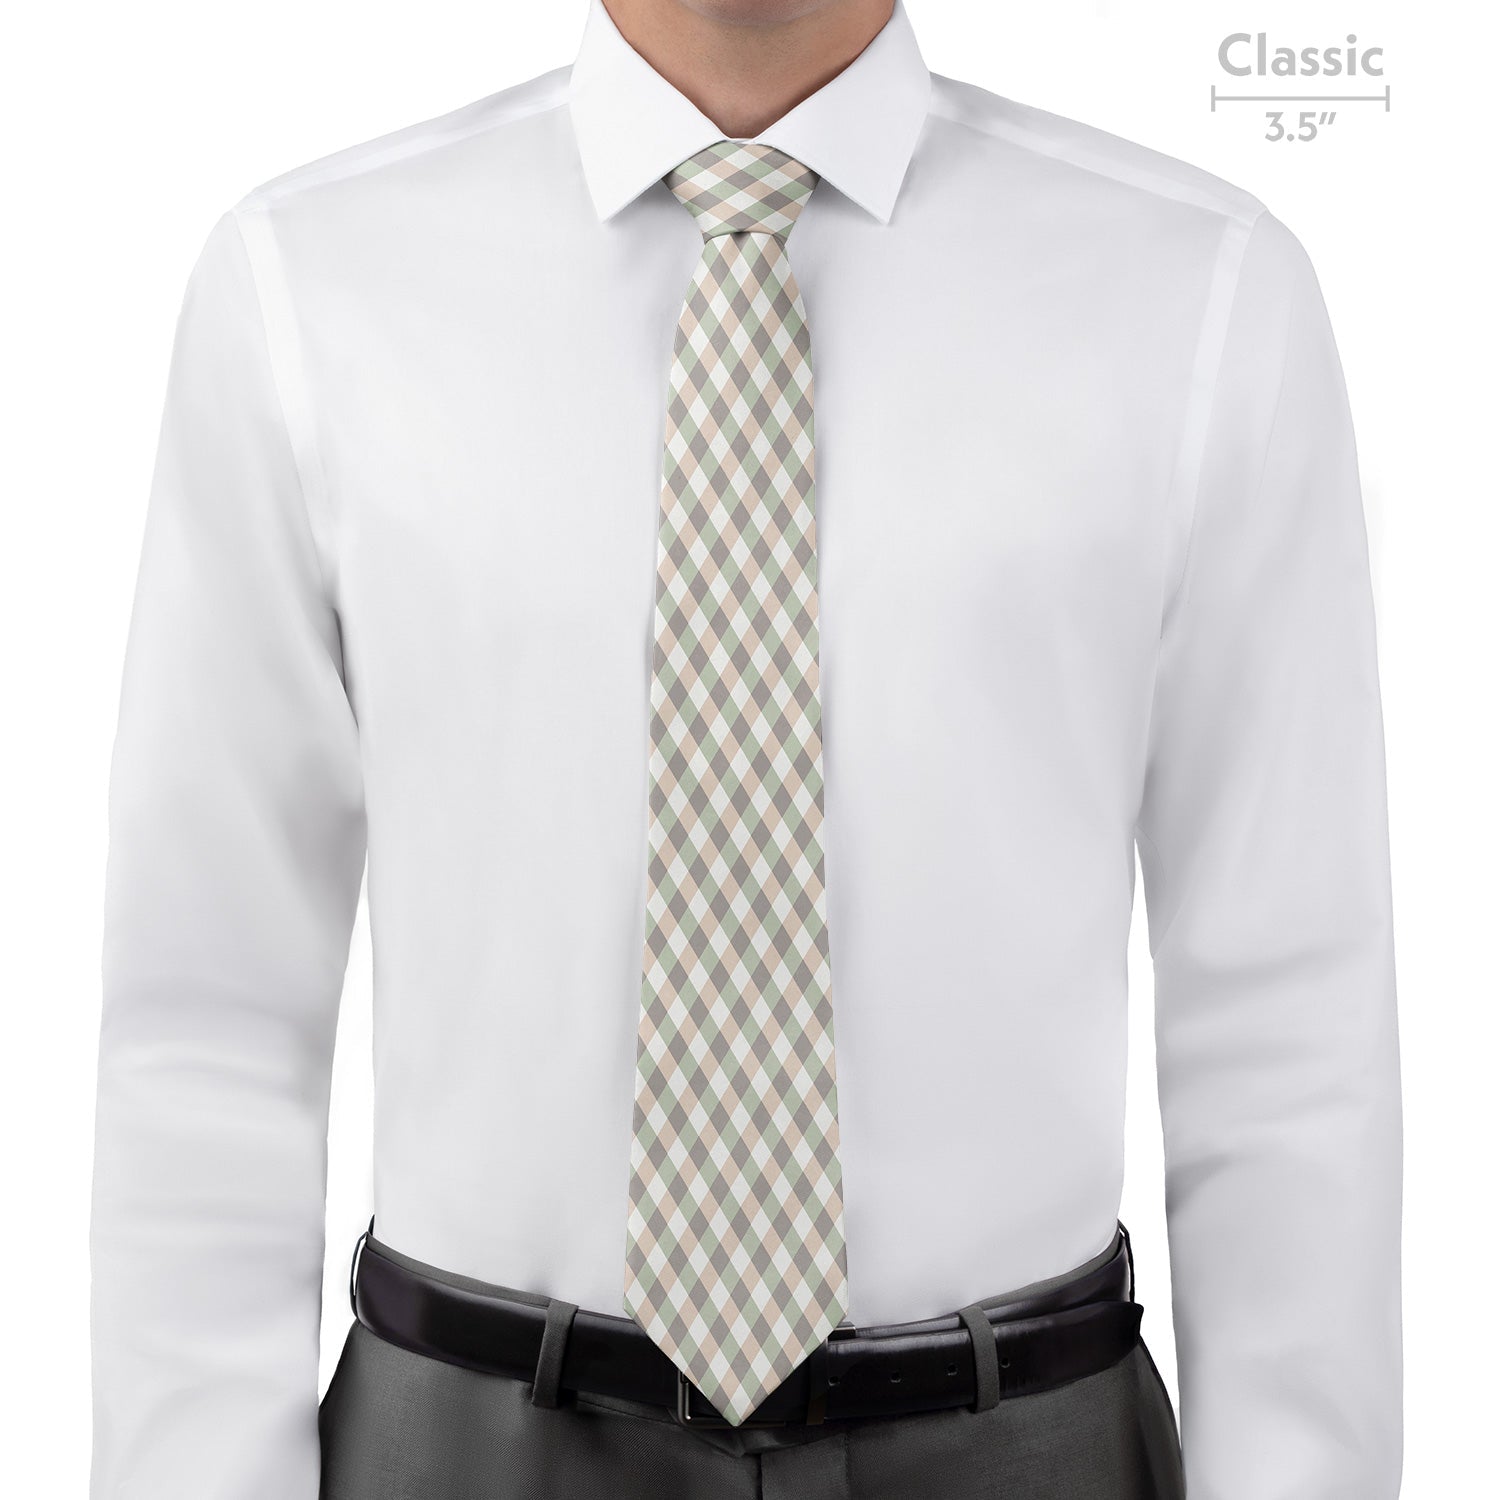 Diamond Plaid Necktie - Classic - Knotty Tie Co.